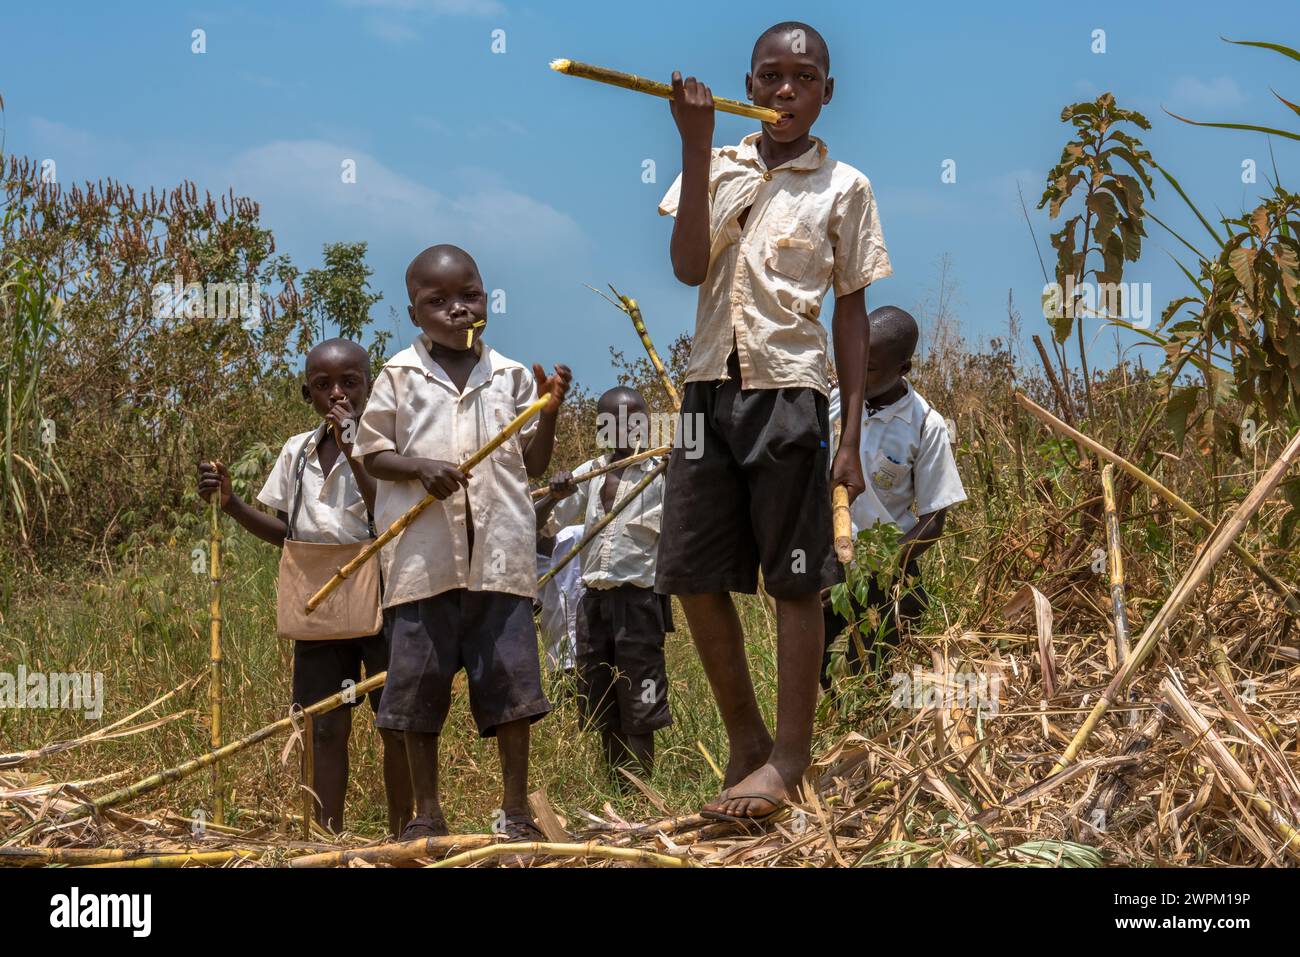 Jeunes écoliers mangeant de la canne à sucre sur le chemin du retour de l'école, Masindi, Ouganda, Afrique de l'est, Afrique Banque D'Images